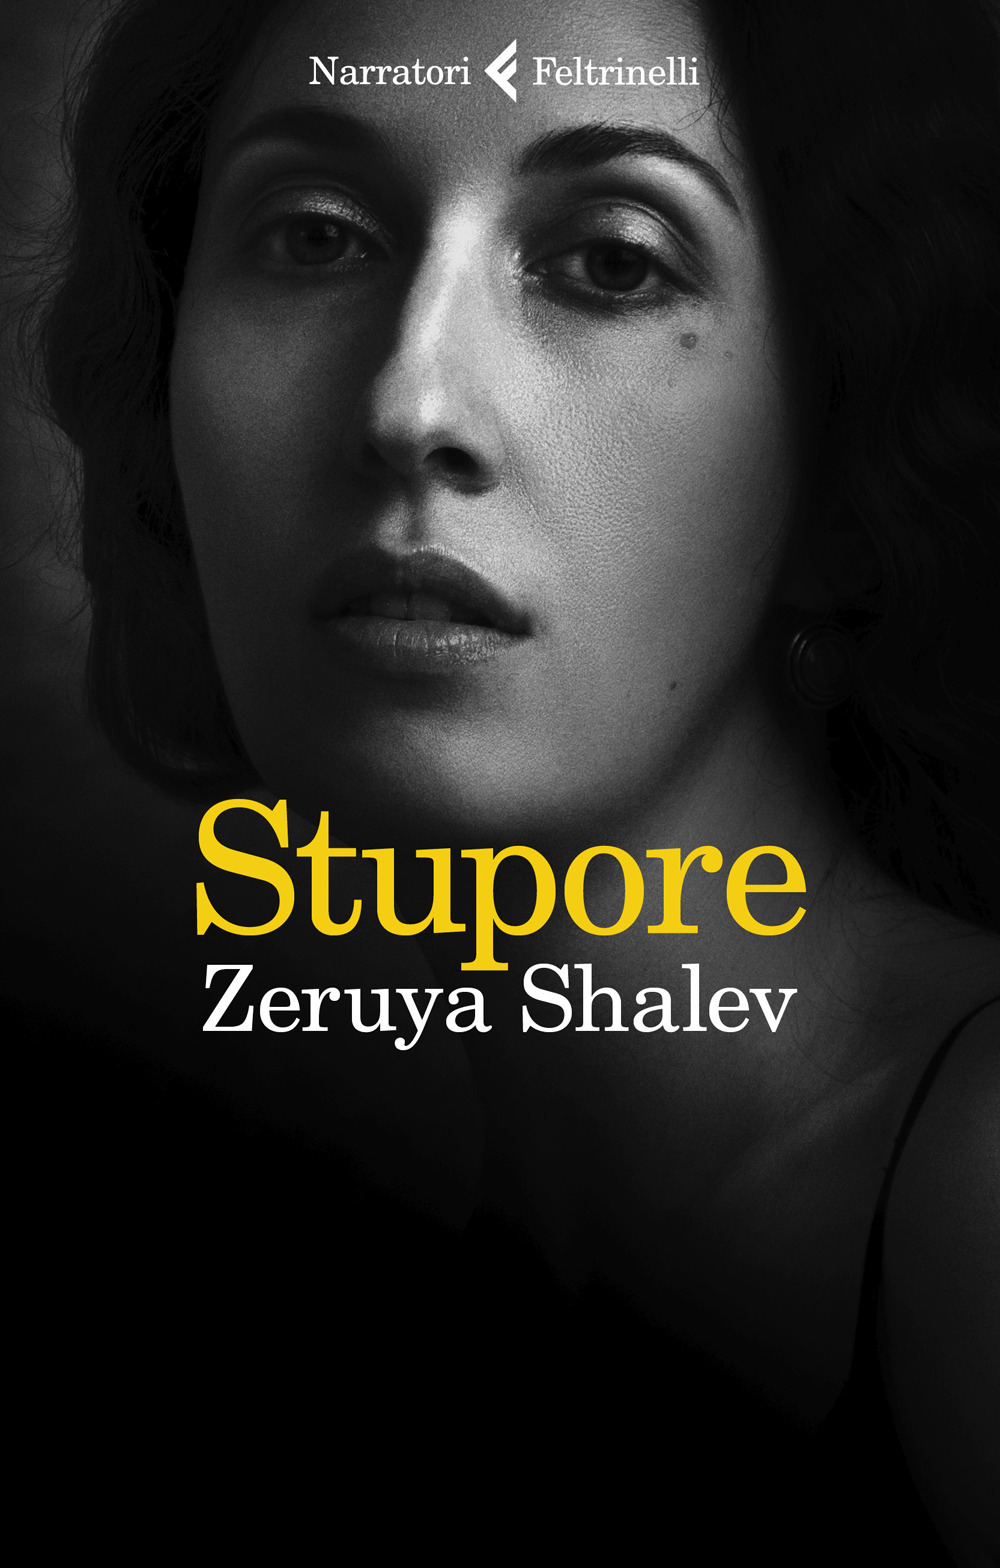 Libri Zeruya Shalev - Stupore NUOVO SIGILLATO, EDIZIONE DEL 06/09/2022 SUBITO DISPONIBILE